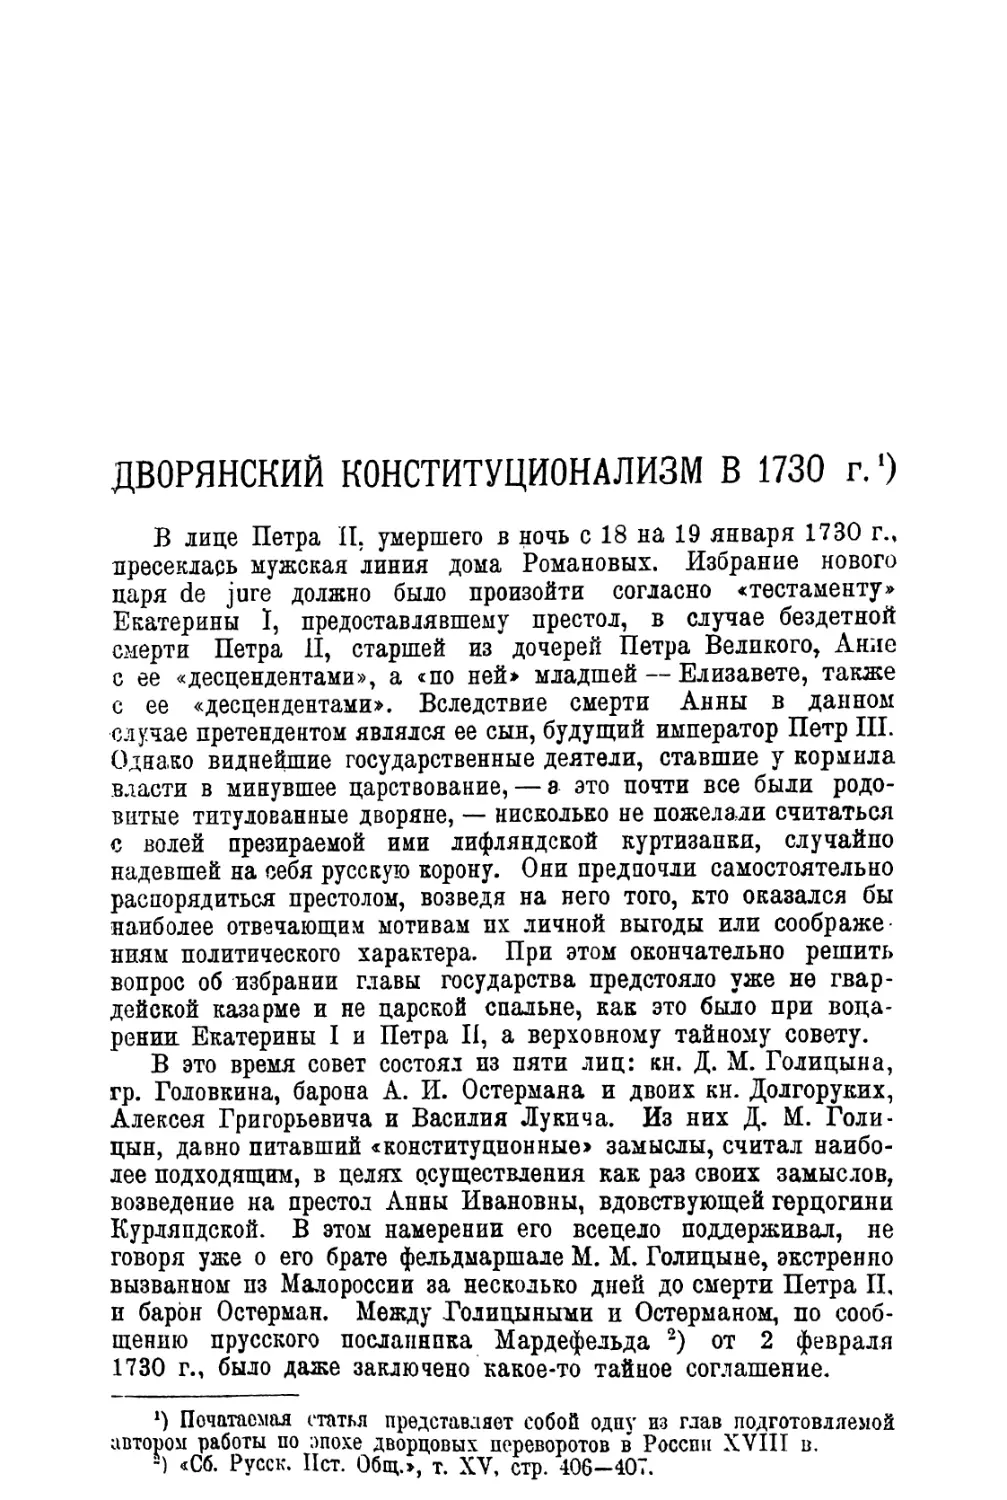 2. С. В. Вознесенский. Дворянский конституционализм в 1730 г.